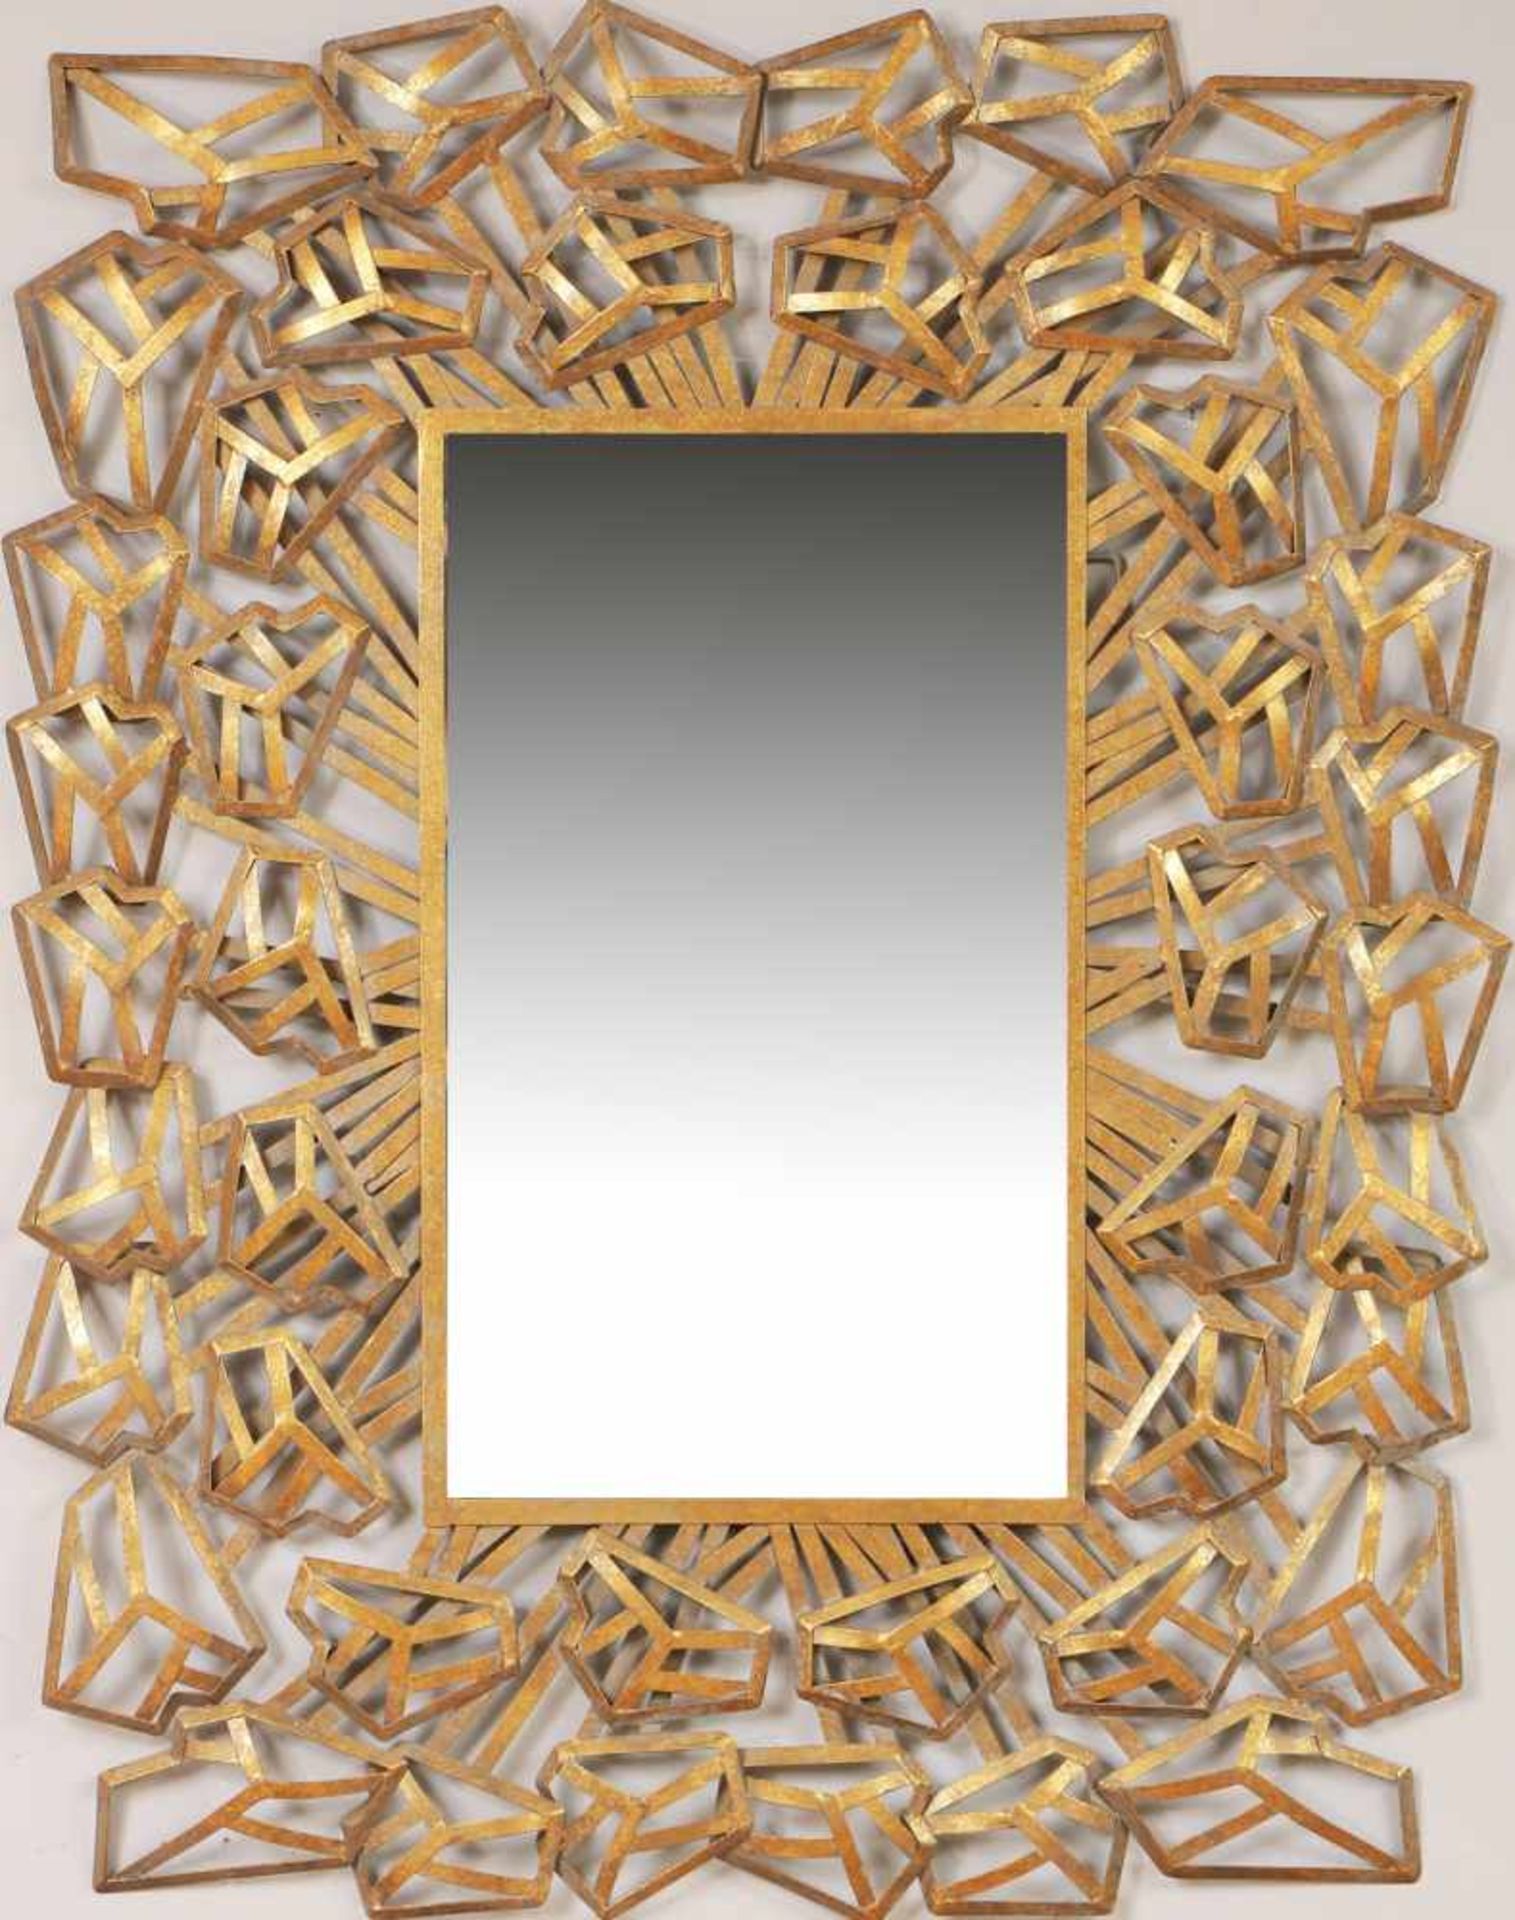 Wandspiegel im Mid-Century Stil Metall, goldfarben staffiert, und geschliffenes Spiegelglas,